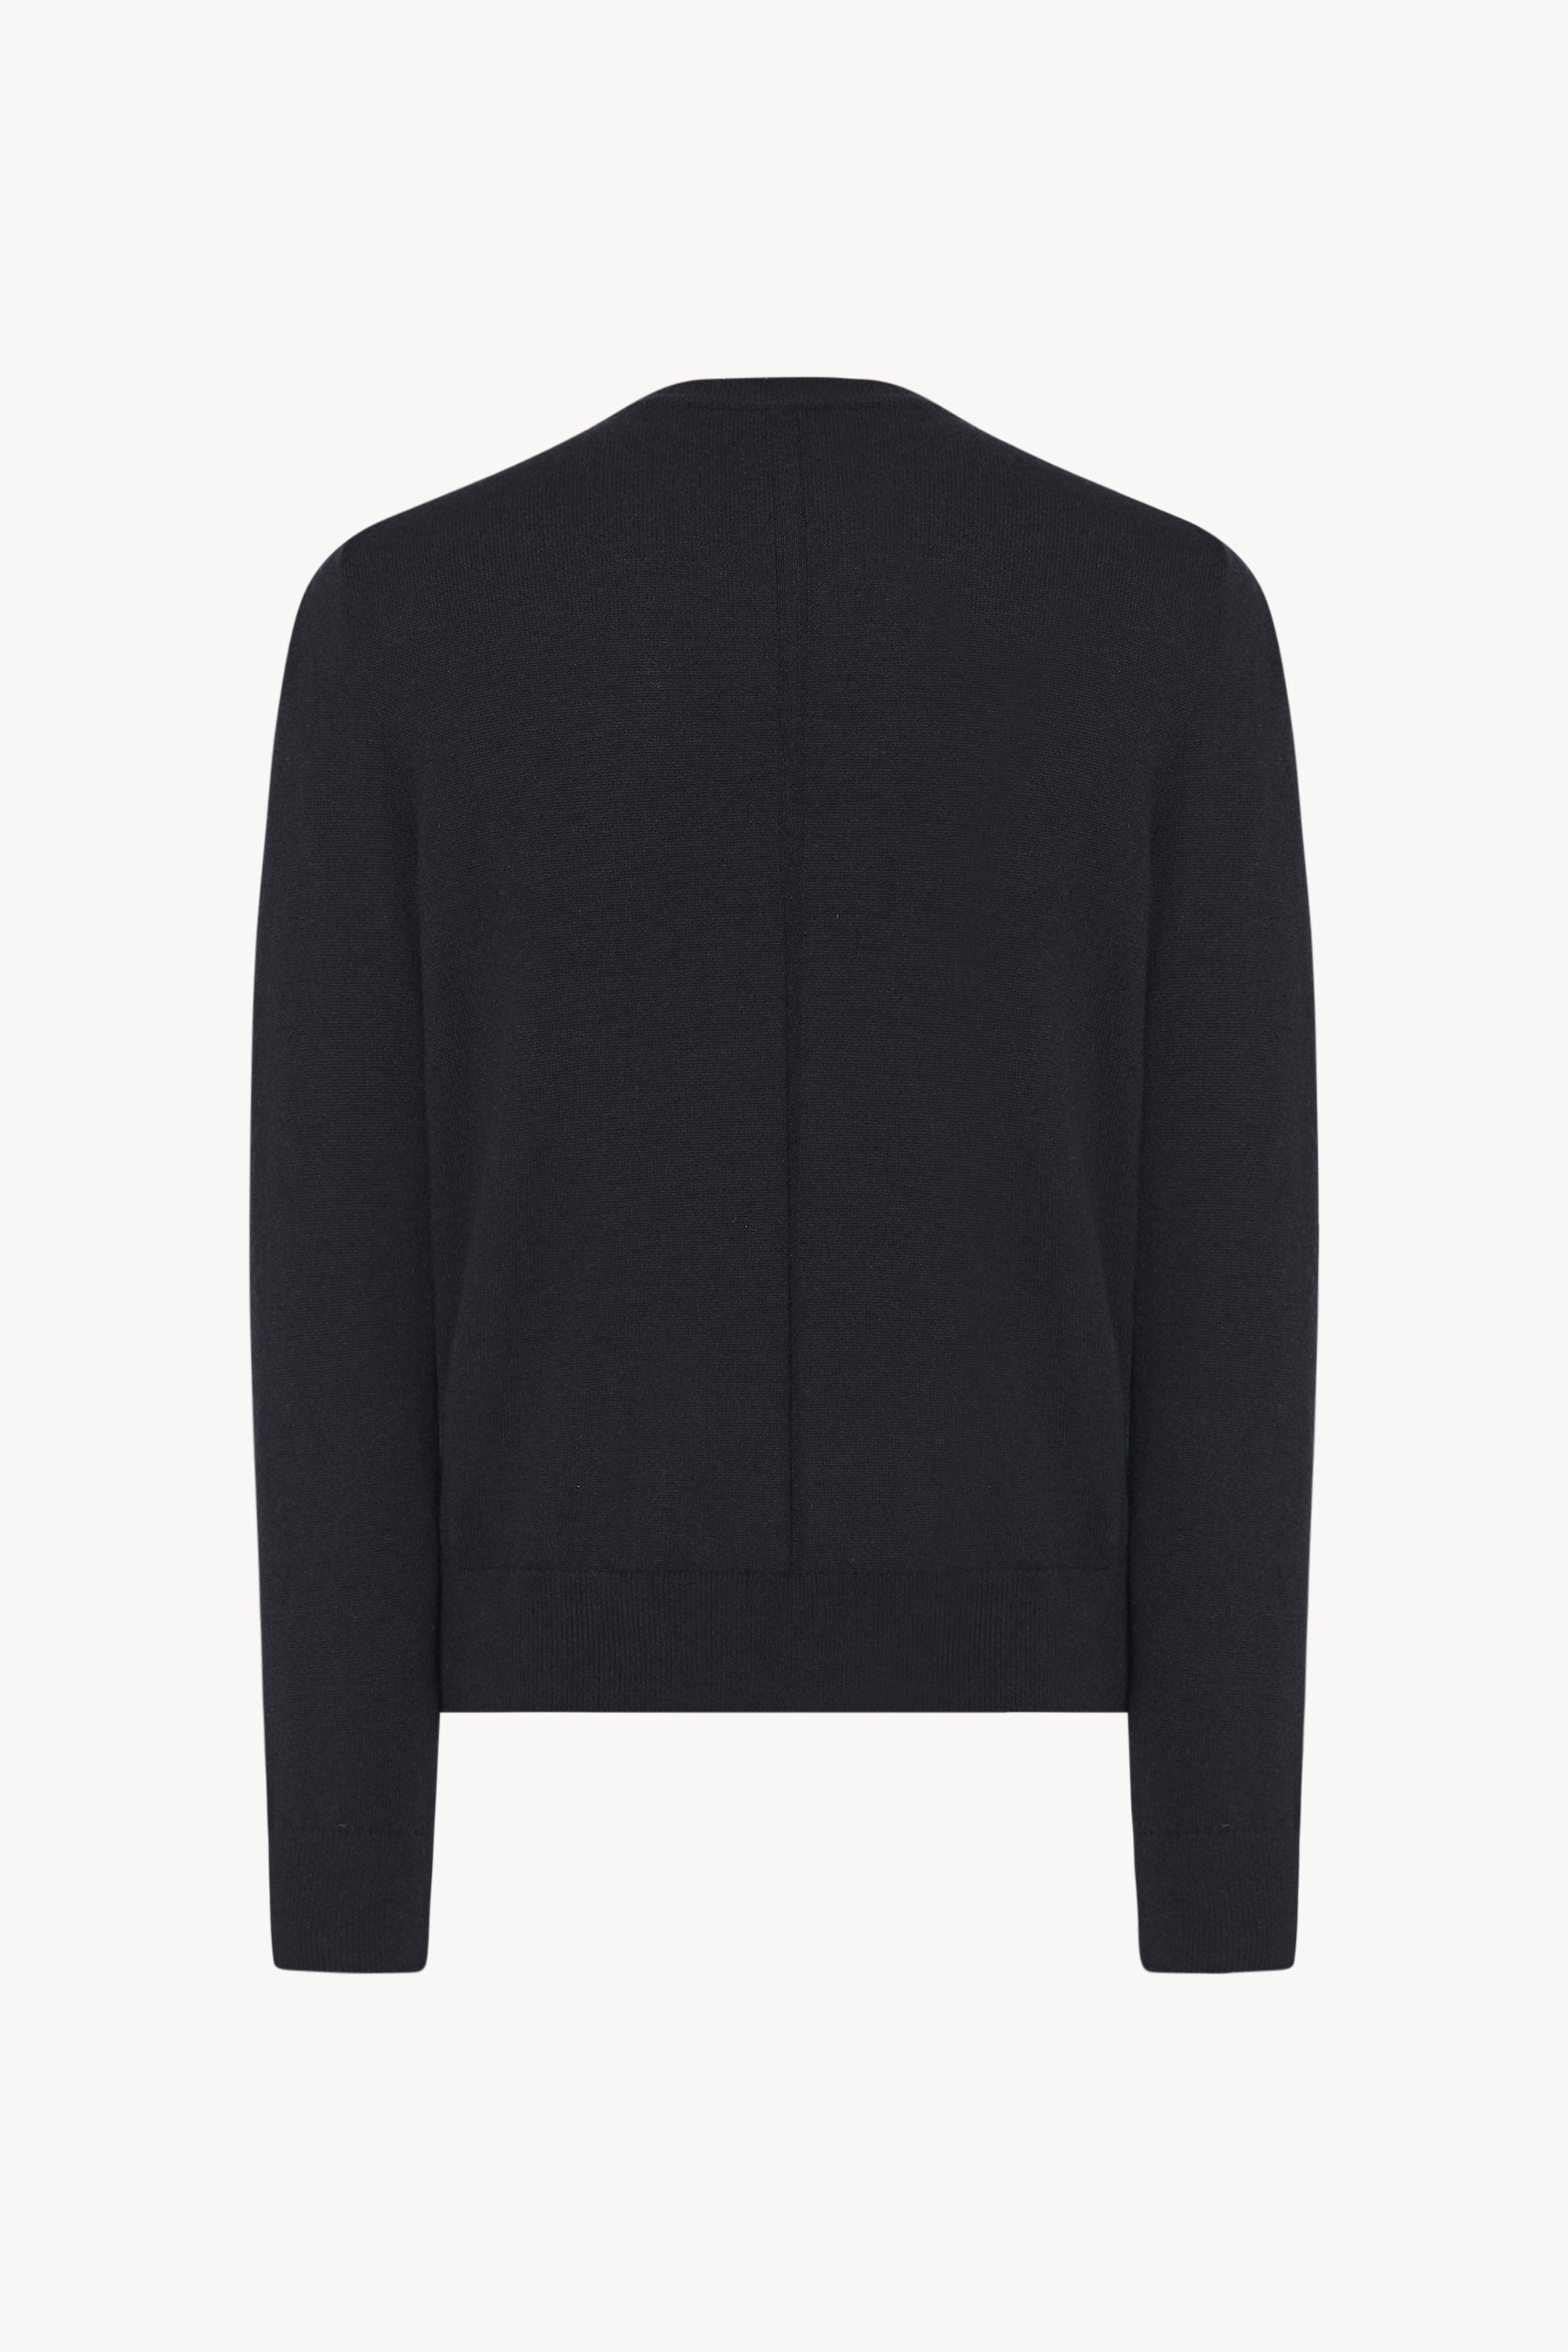 Benji Sweater in Cashmere - 2